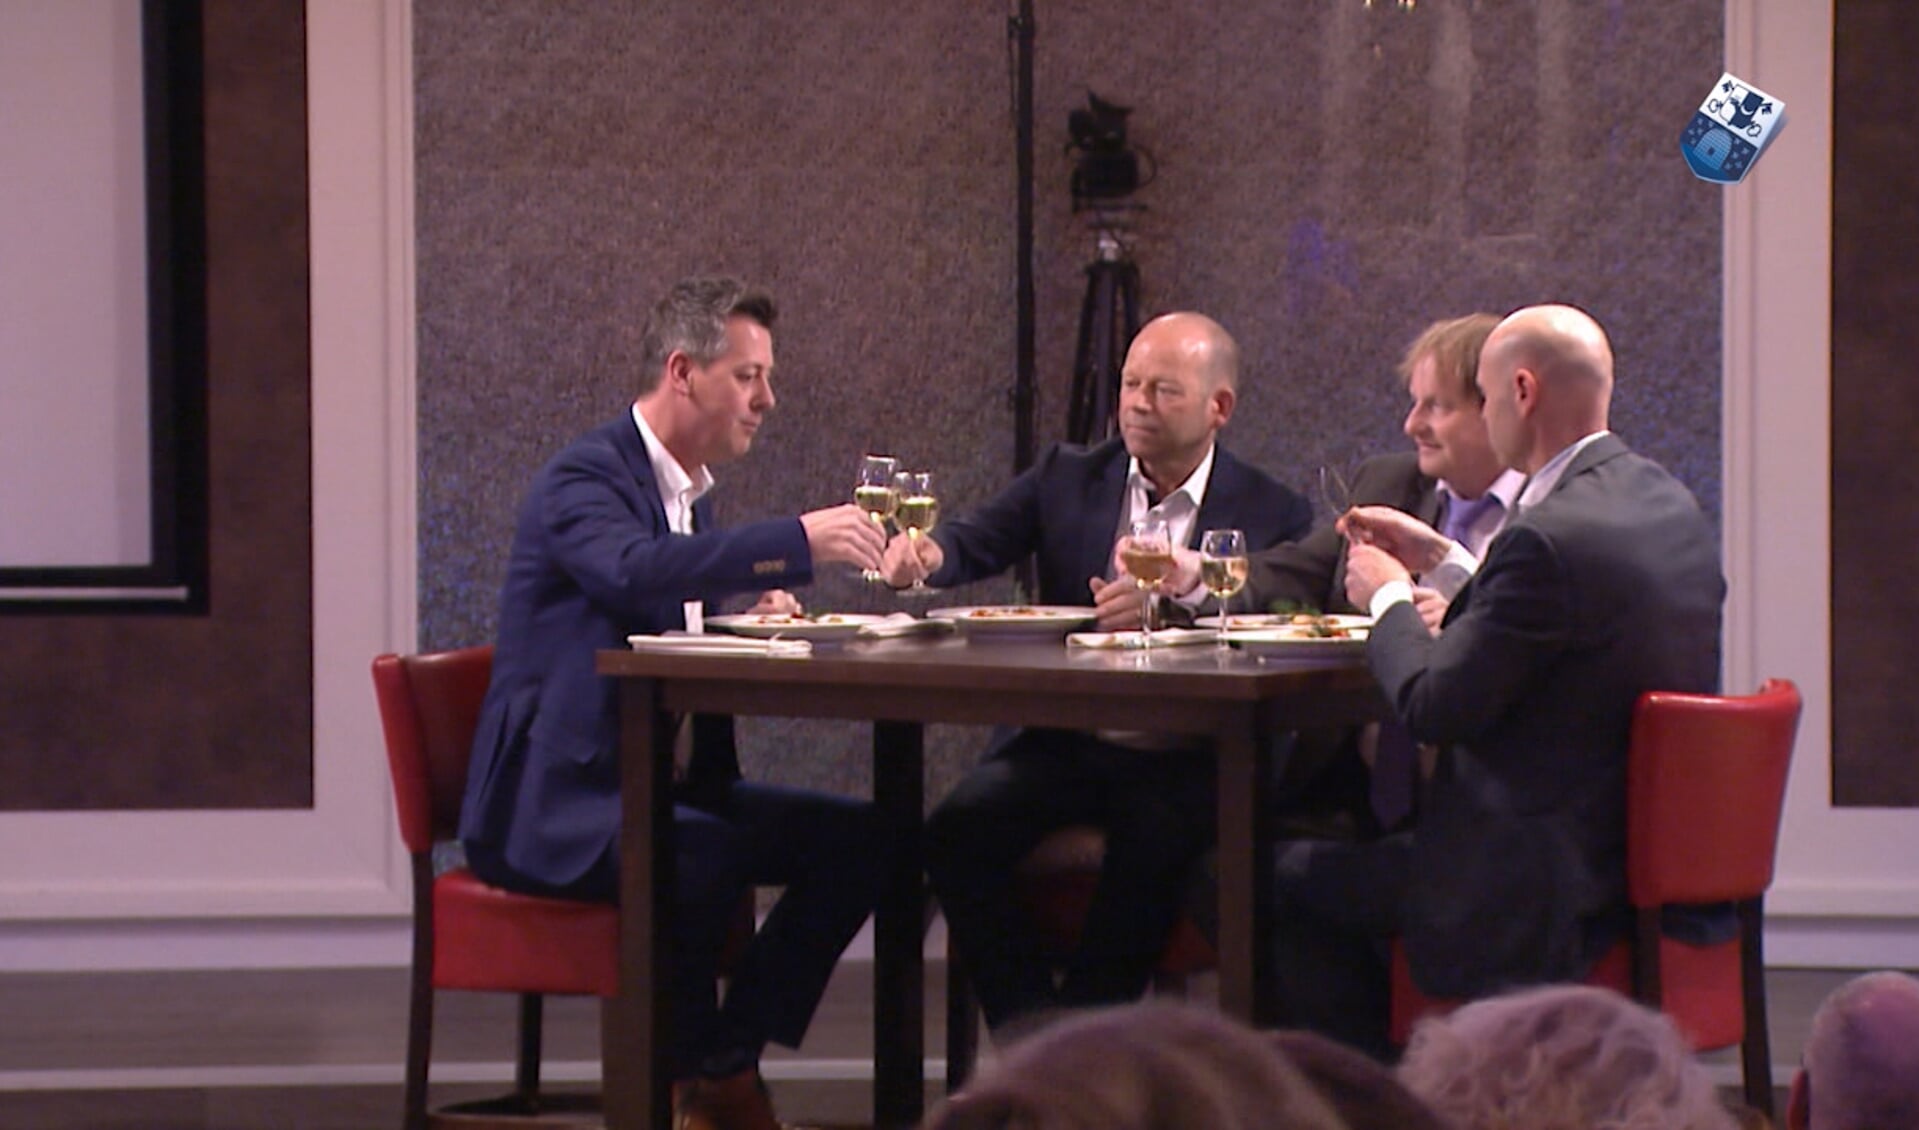 De drie gasten samen met presentator Rob van Lieshout aan tafel. Beeld: Audica Video. 